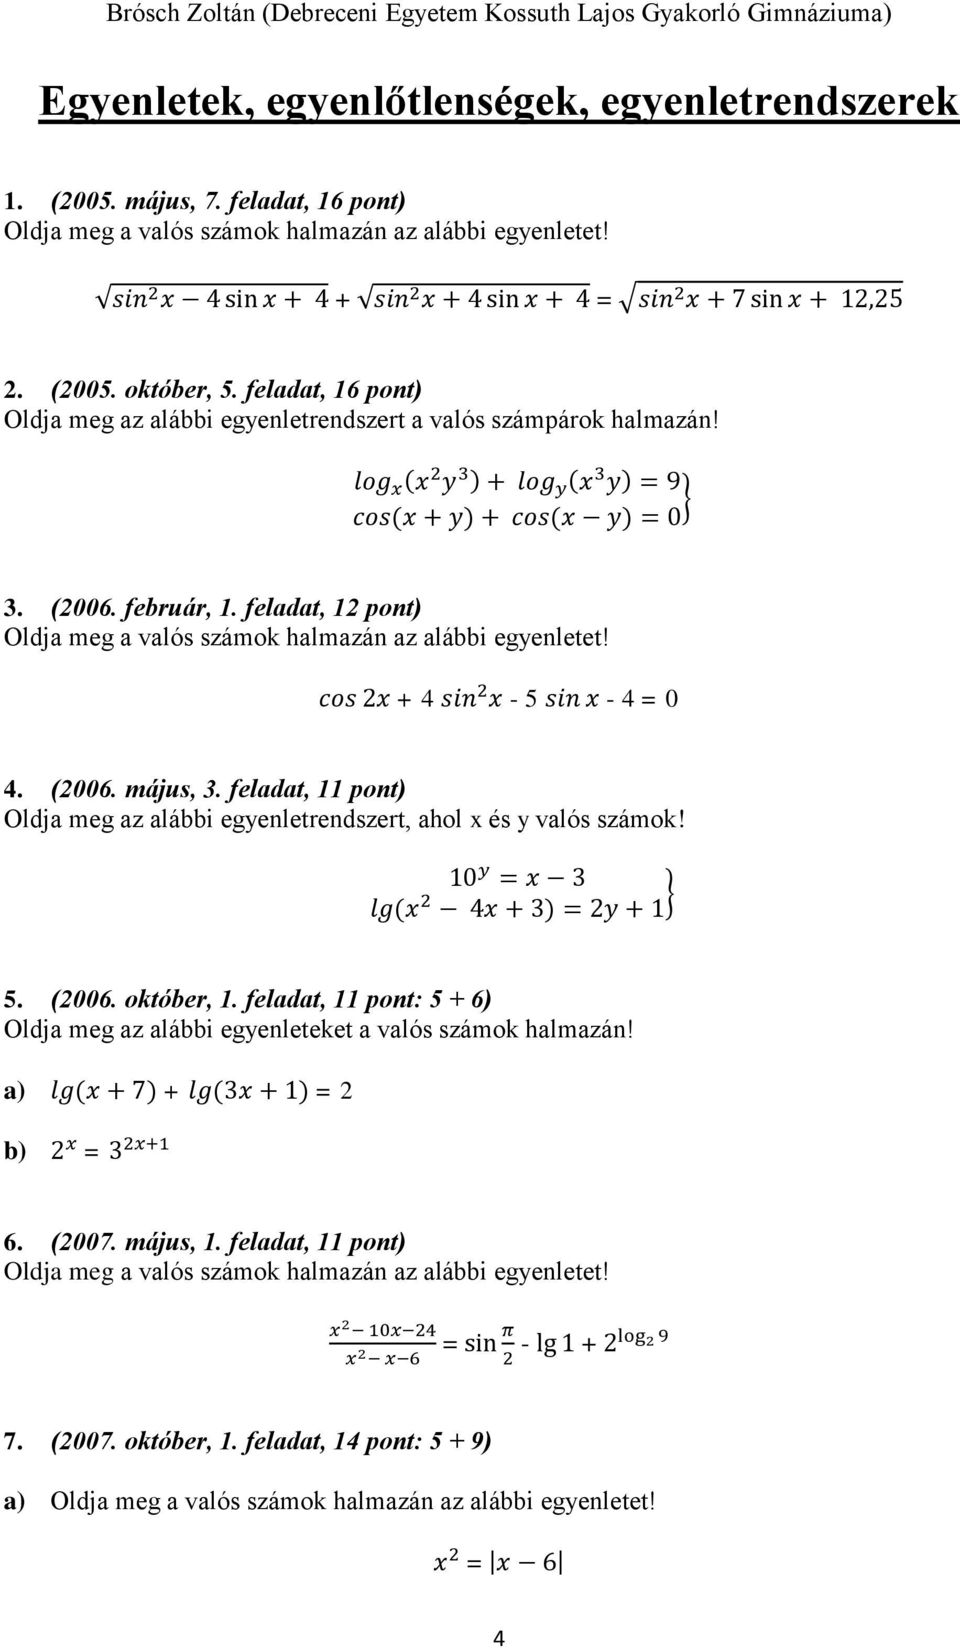 log x (x 2 y 3 ) + log y (x 3 y) = 9 cos(x + y) + cos(x y) = 0 } 3. (2006. február, 1. feladat, 12 pont) Oldja meg a valós számok halmazán az alábbi egyenletet! cos 2x + 4 sin 2 x - 5 sin x - 4 = 0 4.